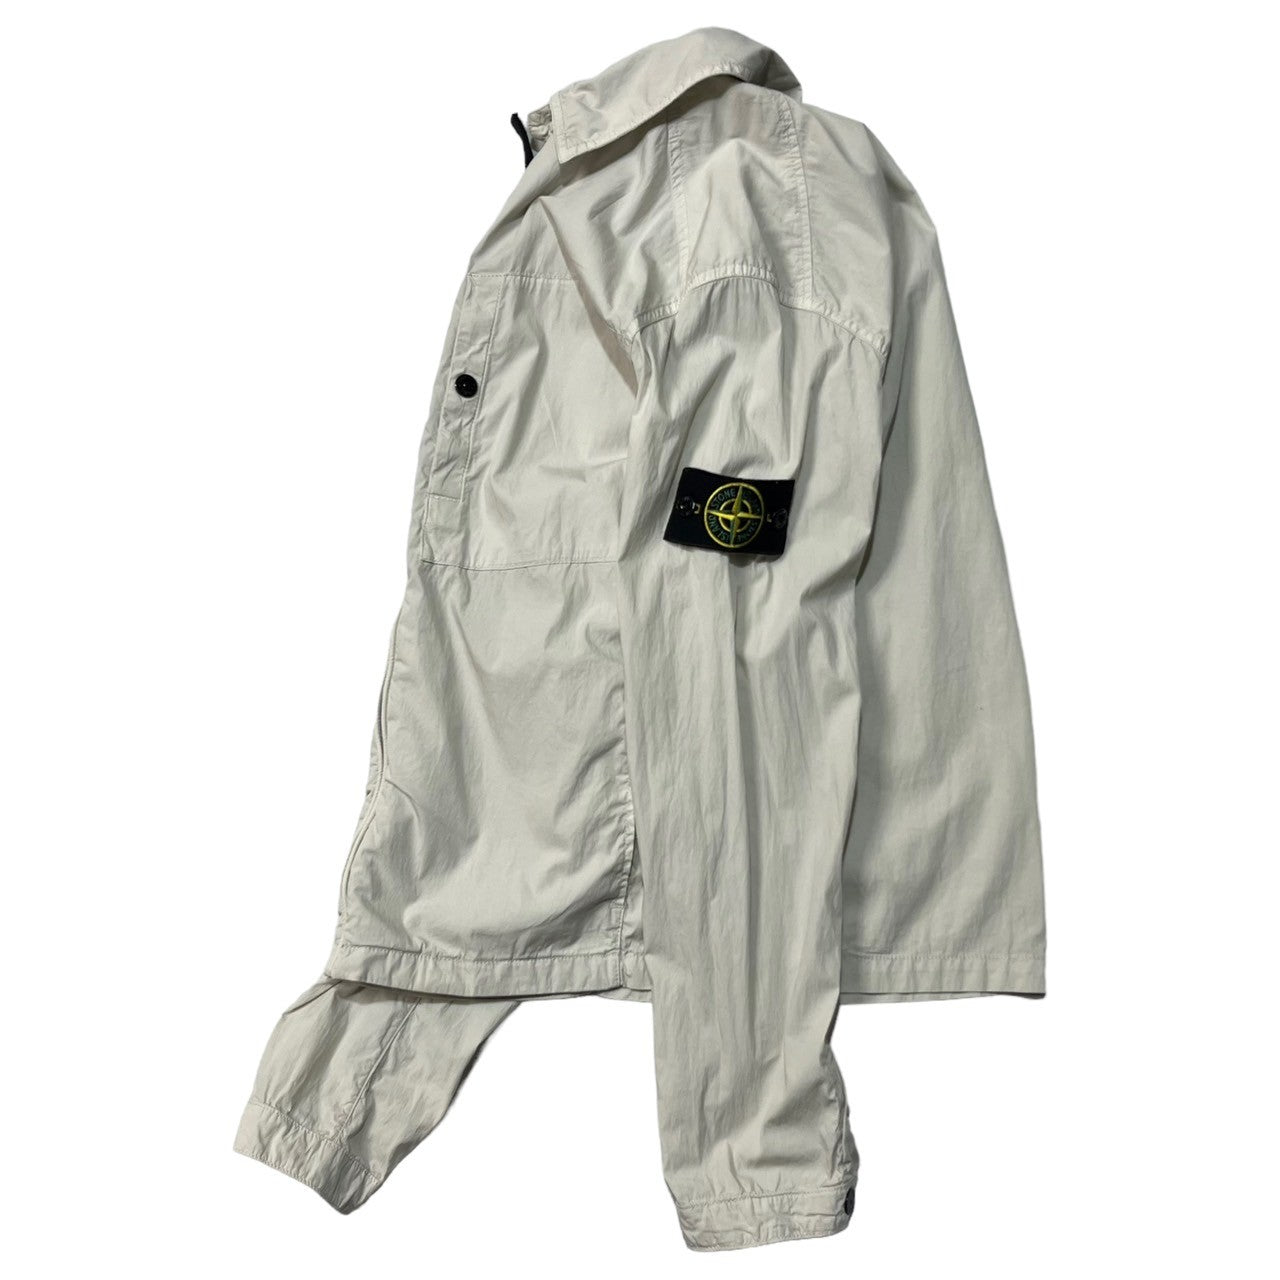 STONE ISLAND(ストーンアイランド) over shirt jacket オーバーシャツ ジャケット 581510220 S アイボリー